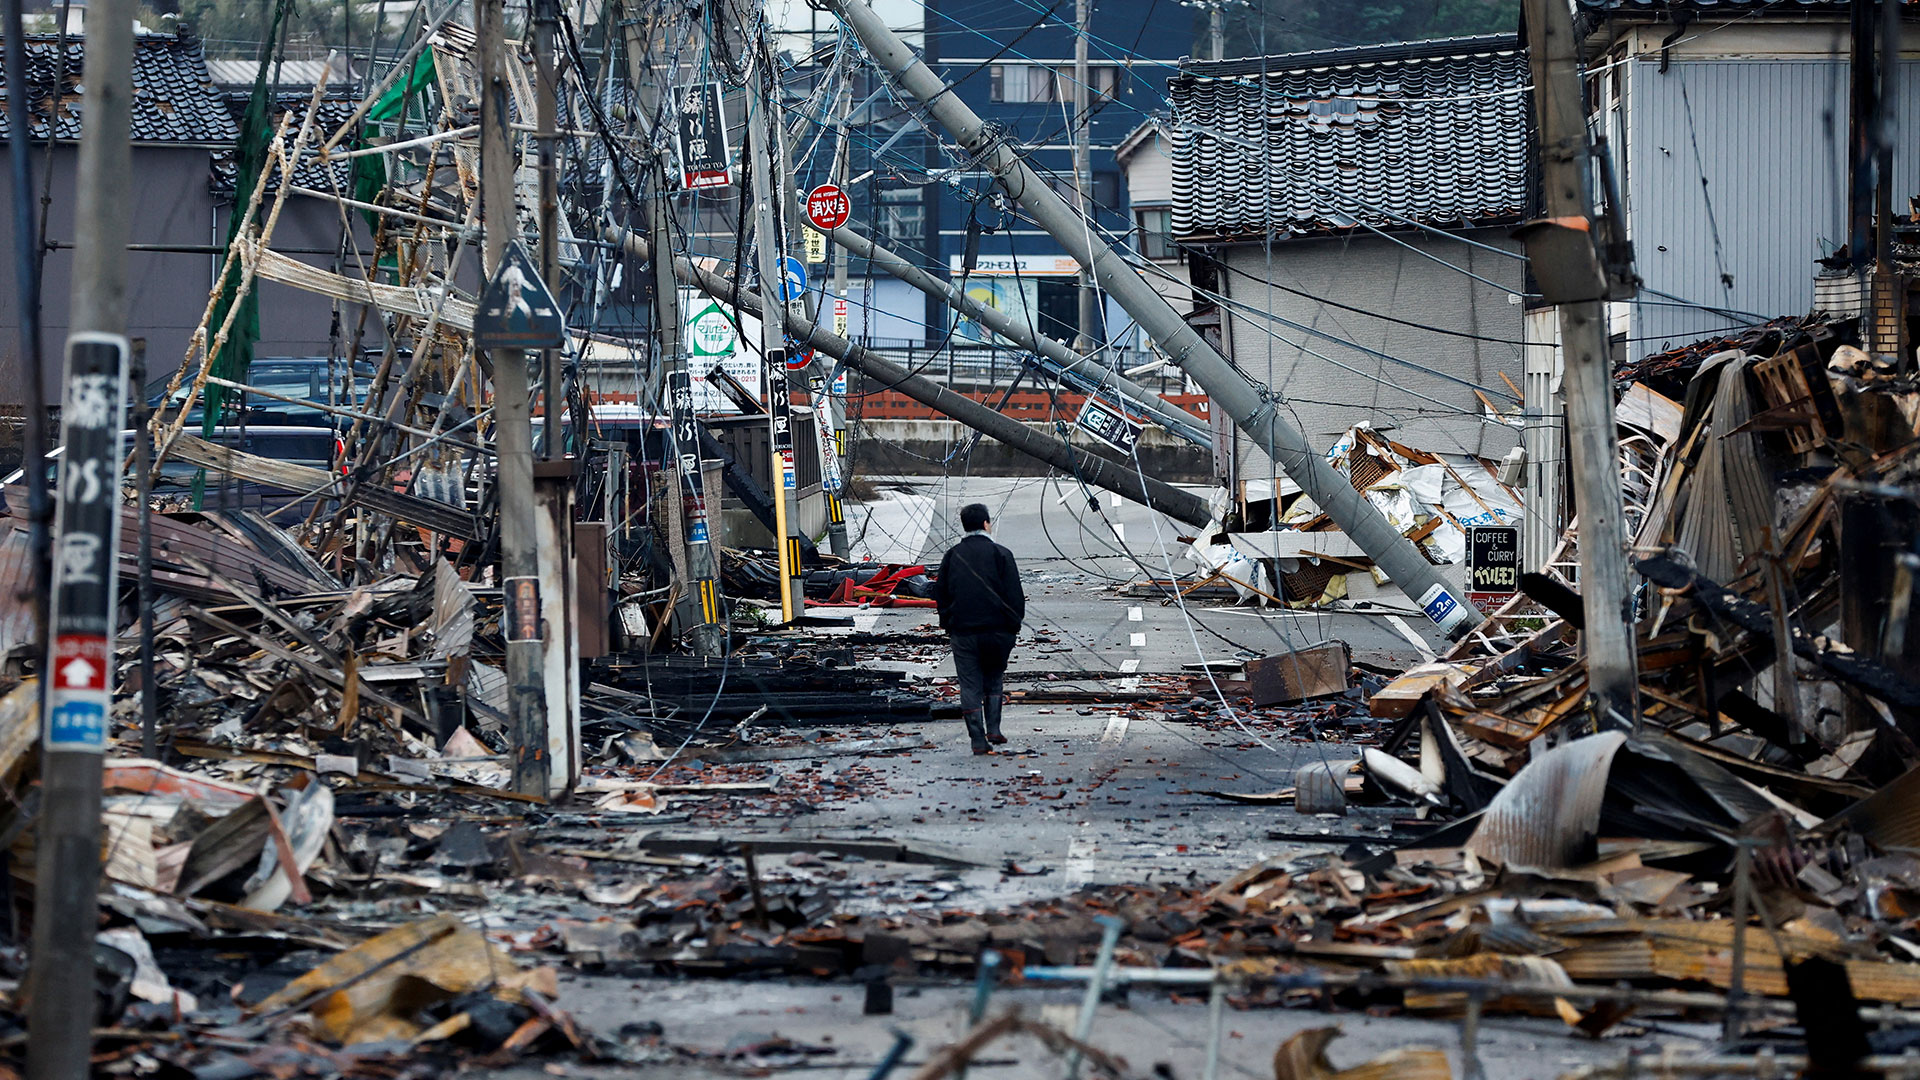 Ιαπωνία: Μάχη με τον χρόνο για τους επιζώντες – Προβλήματα στην παροχή βοήθειας-2